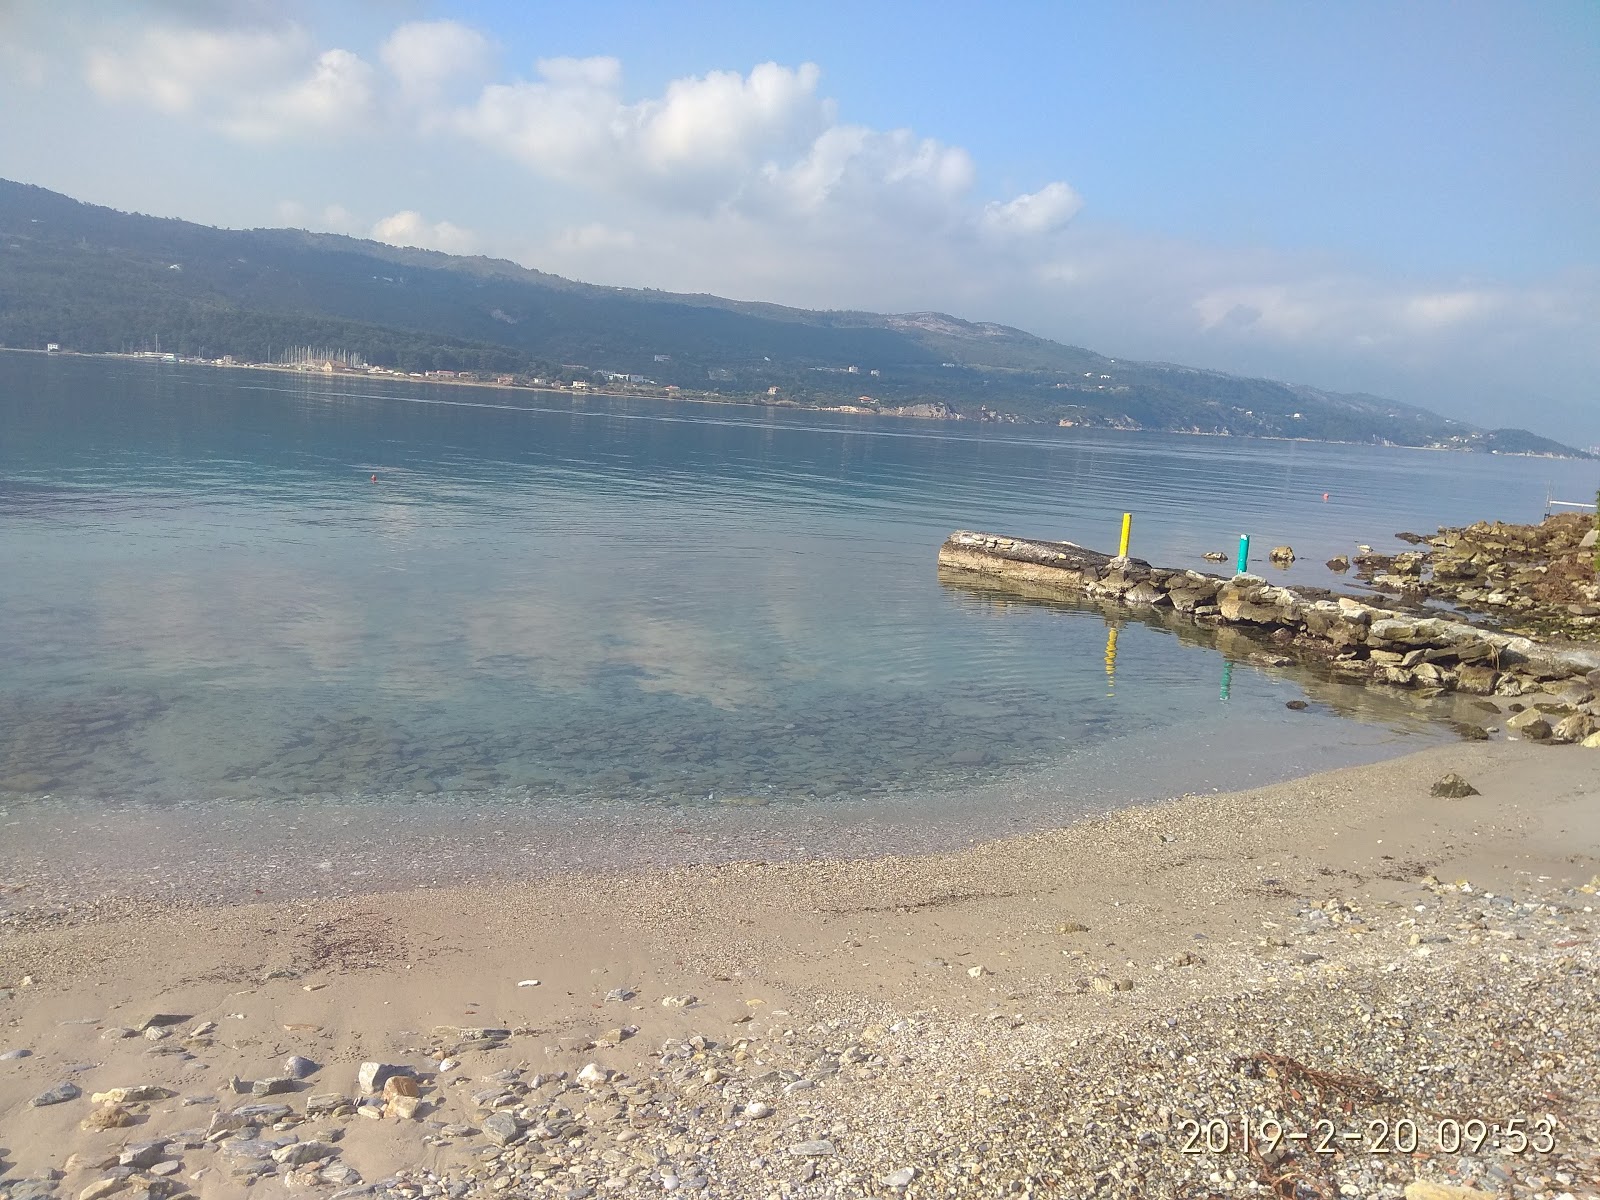 Roditses beach'in fotoğrafı ve yerleşim